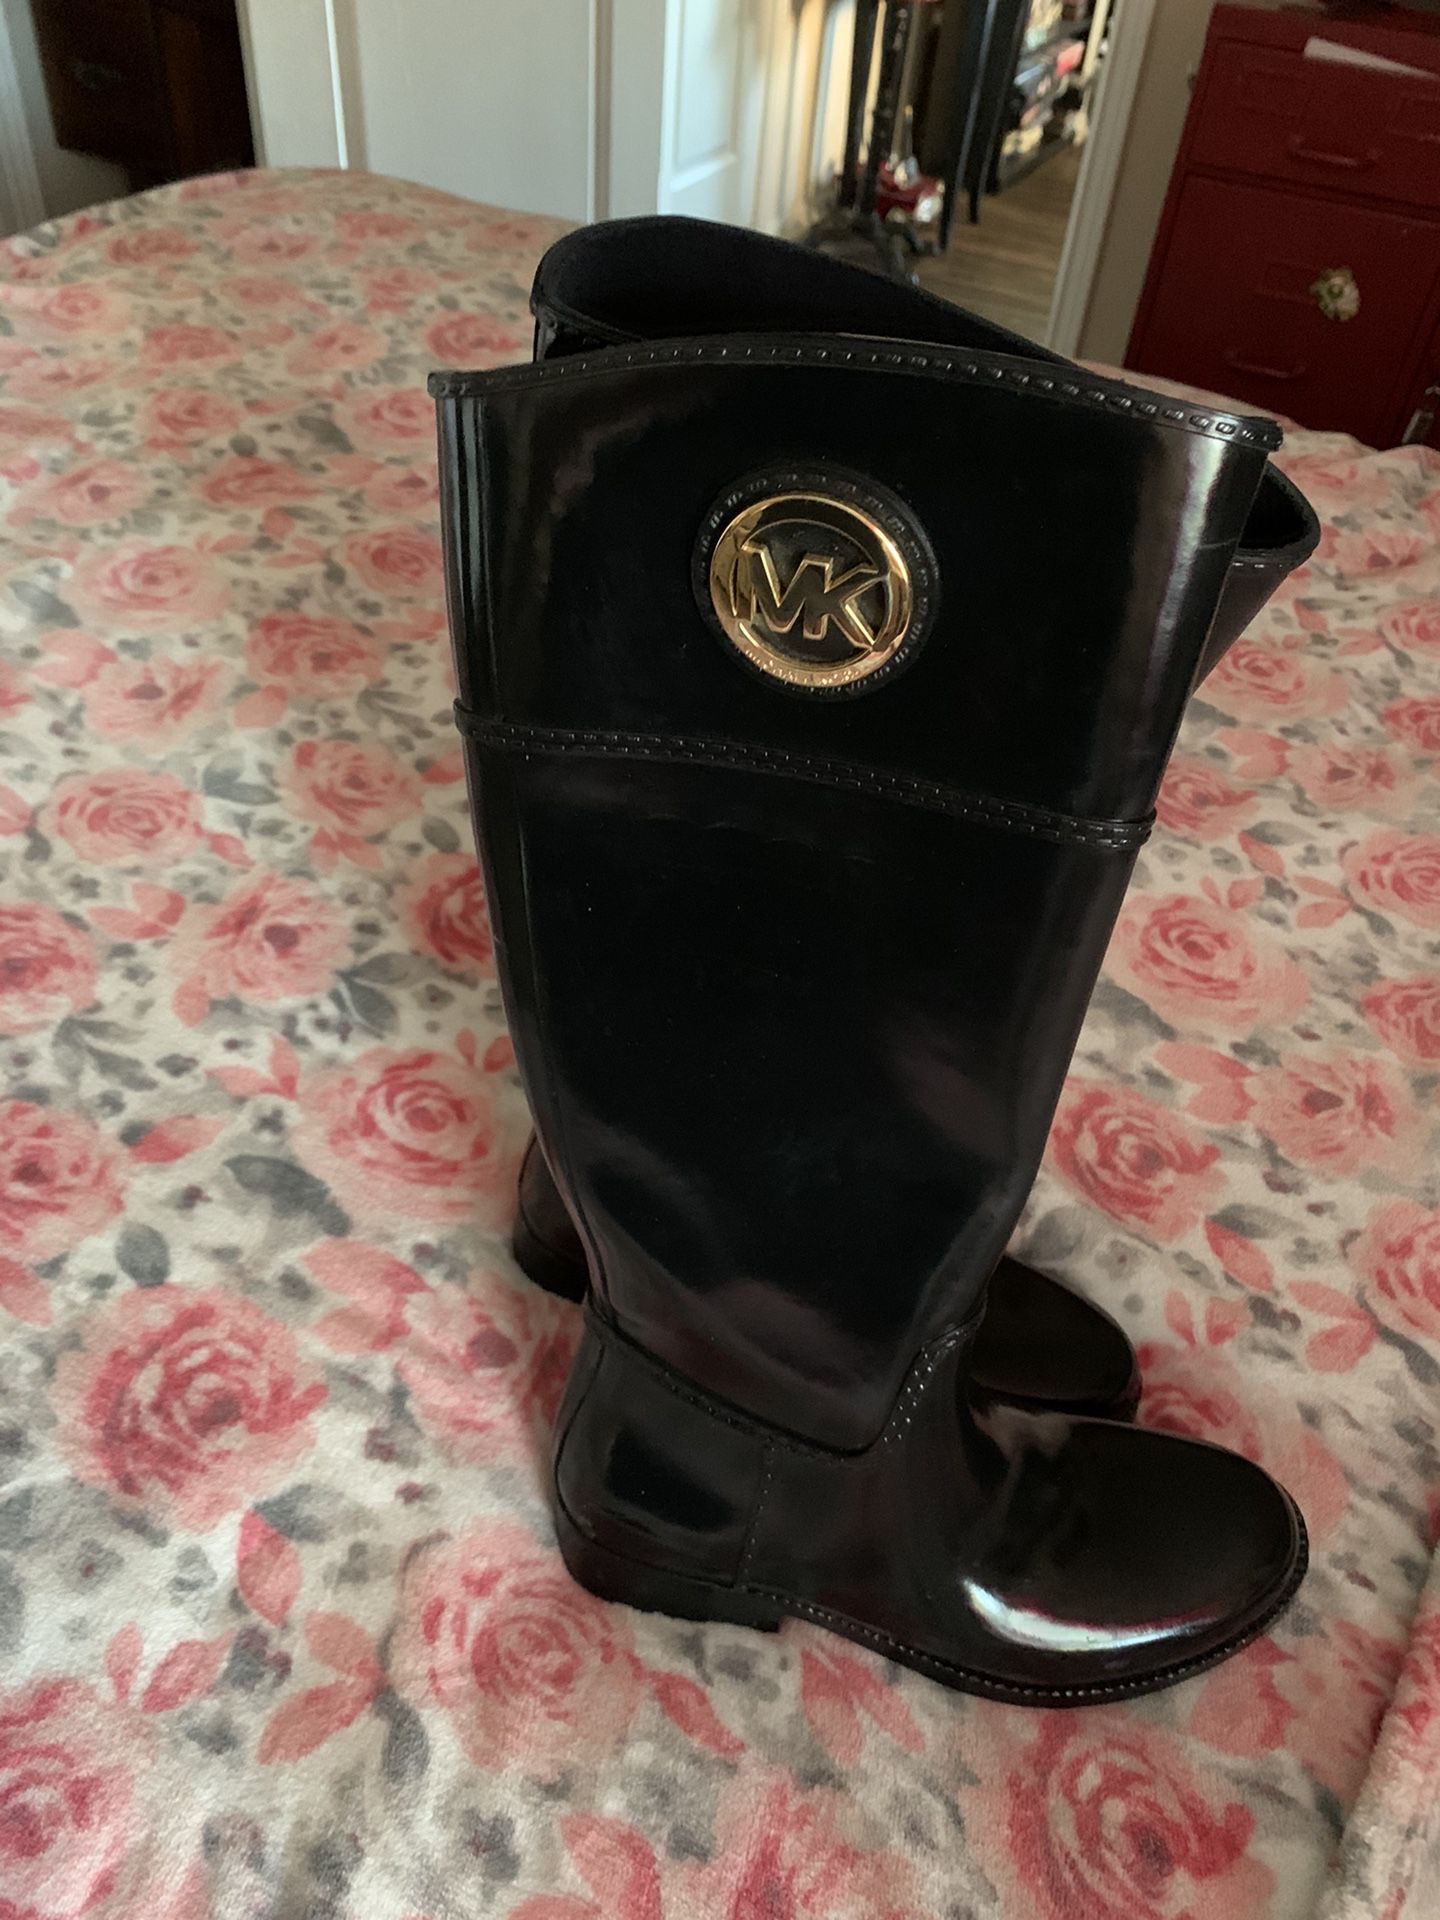 MK rain boots size 7